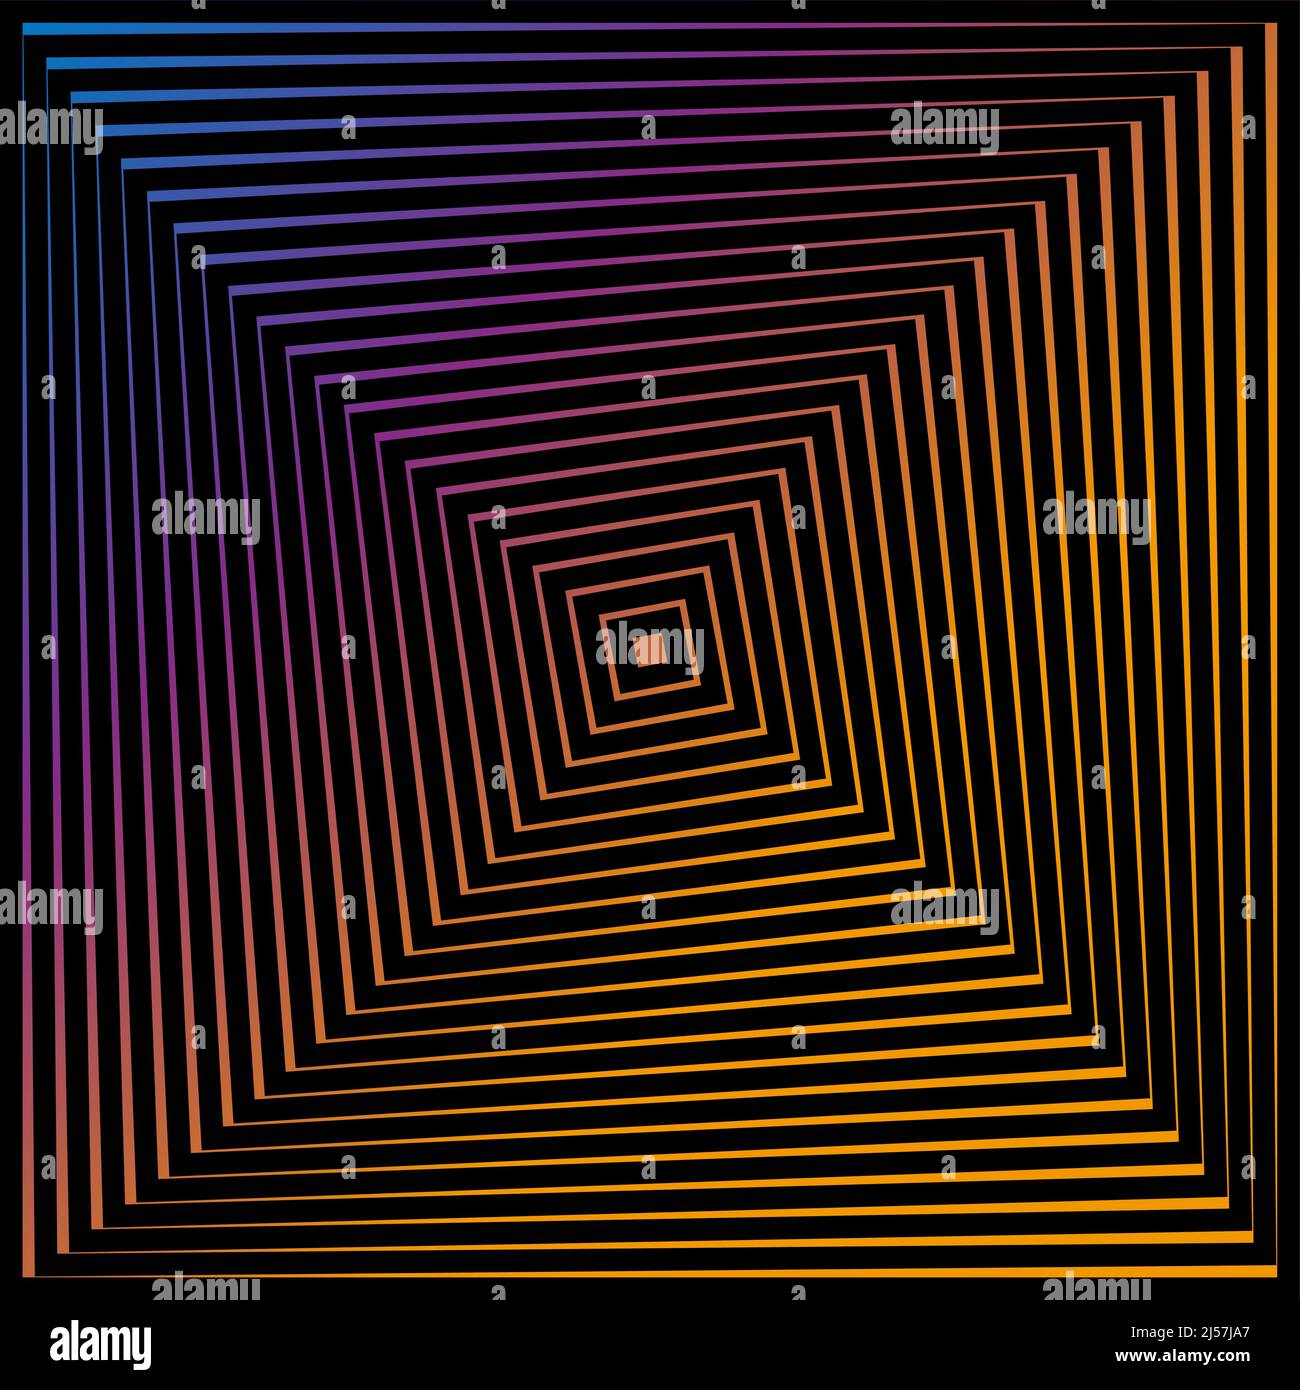 Op Art Quadrate in farbenfrohem Farbverlauf mit optischem Verzerrungseffekt, der eine optische Illusion von Pyramiden oder Tunneln erzeugt. Hypnotisches Banner, Vektorstruktur Stock Vektor